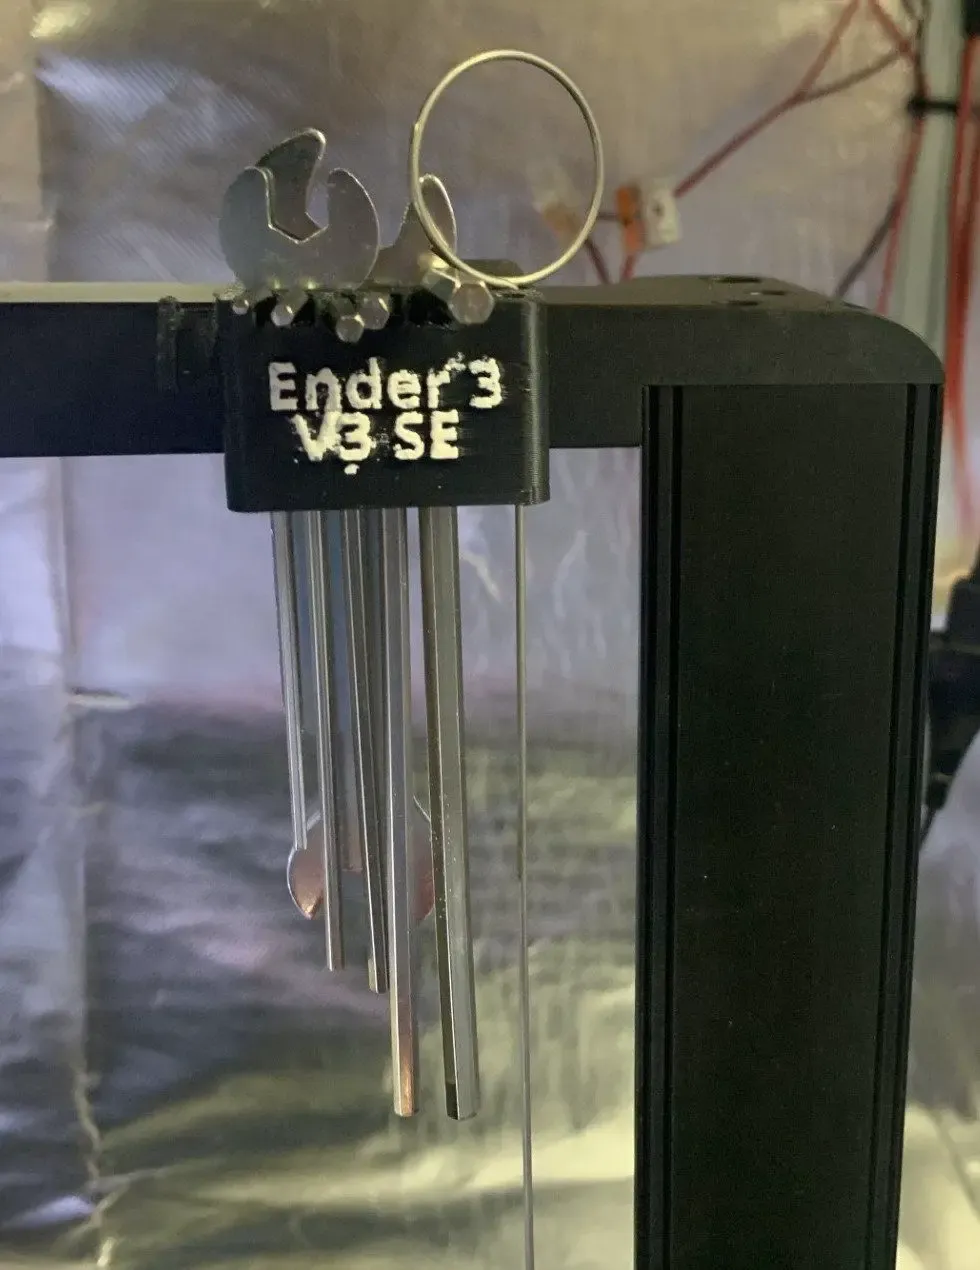 Ender 3 V3 SE Tool Holder